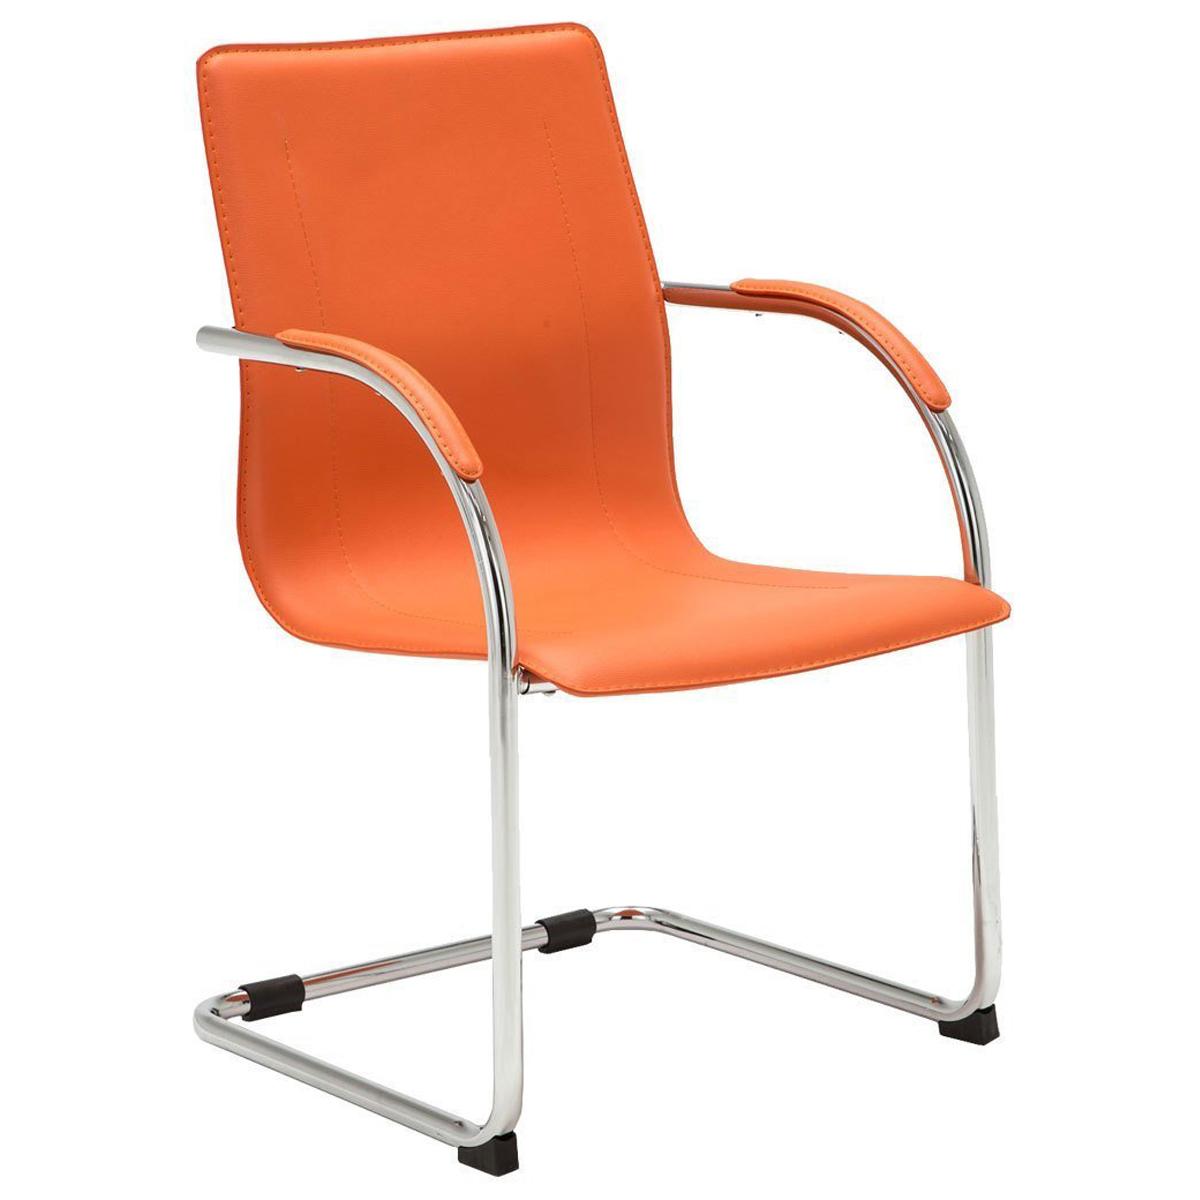 Sedia da Attesa o Riunioni FLAP, Struttura in metallo, Design elegante e moderno in Pelle, colore Arancione